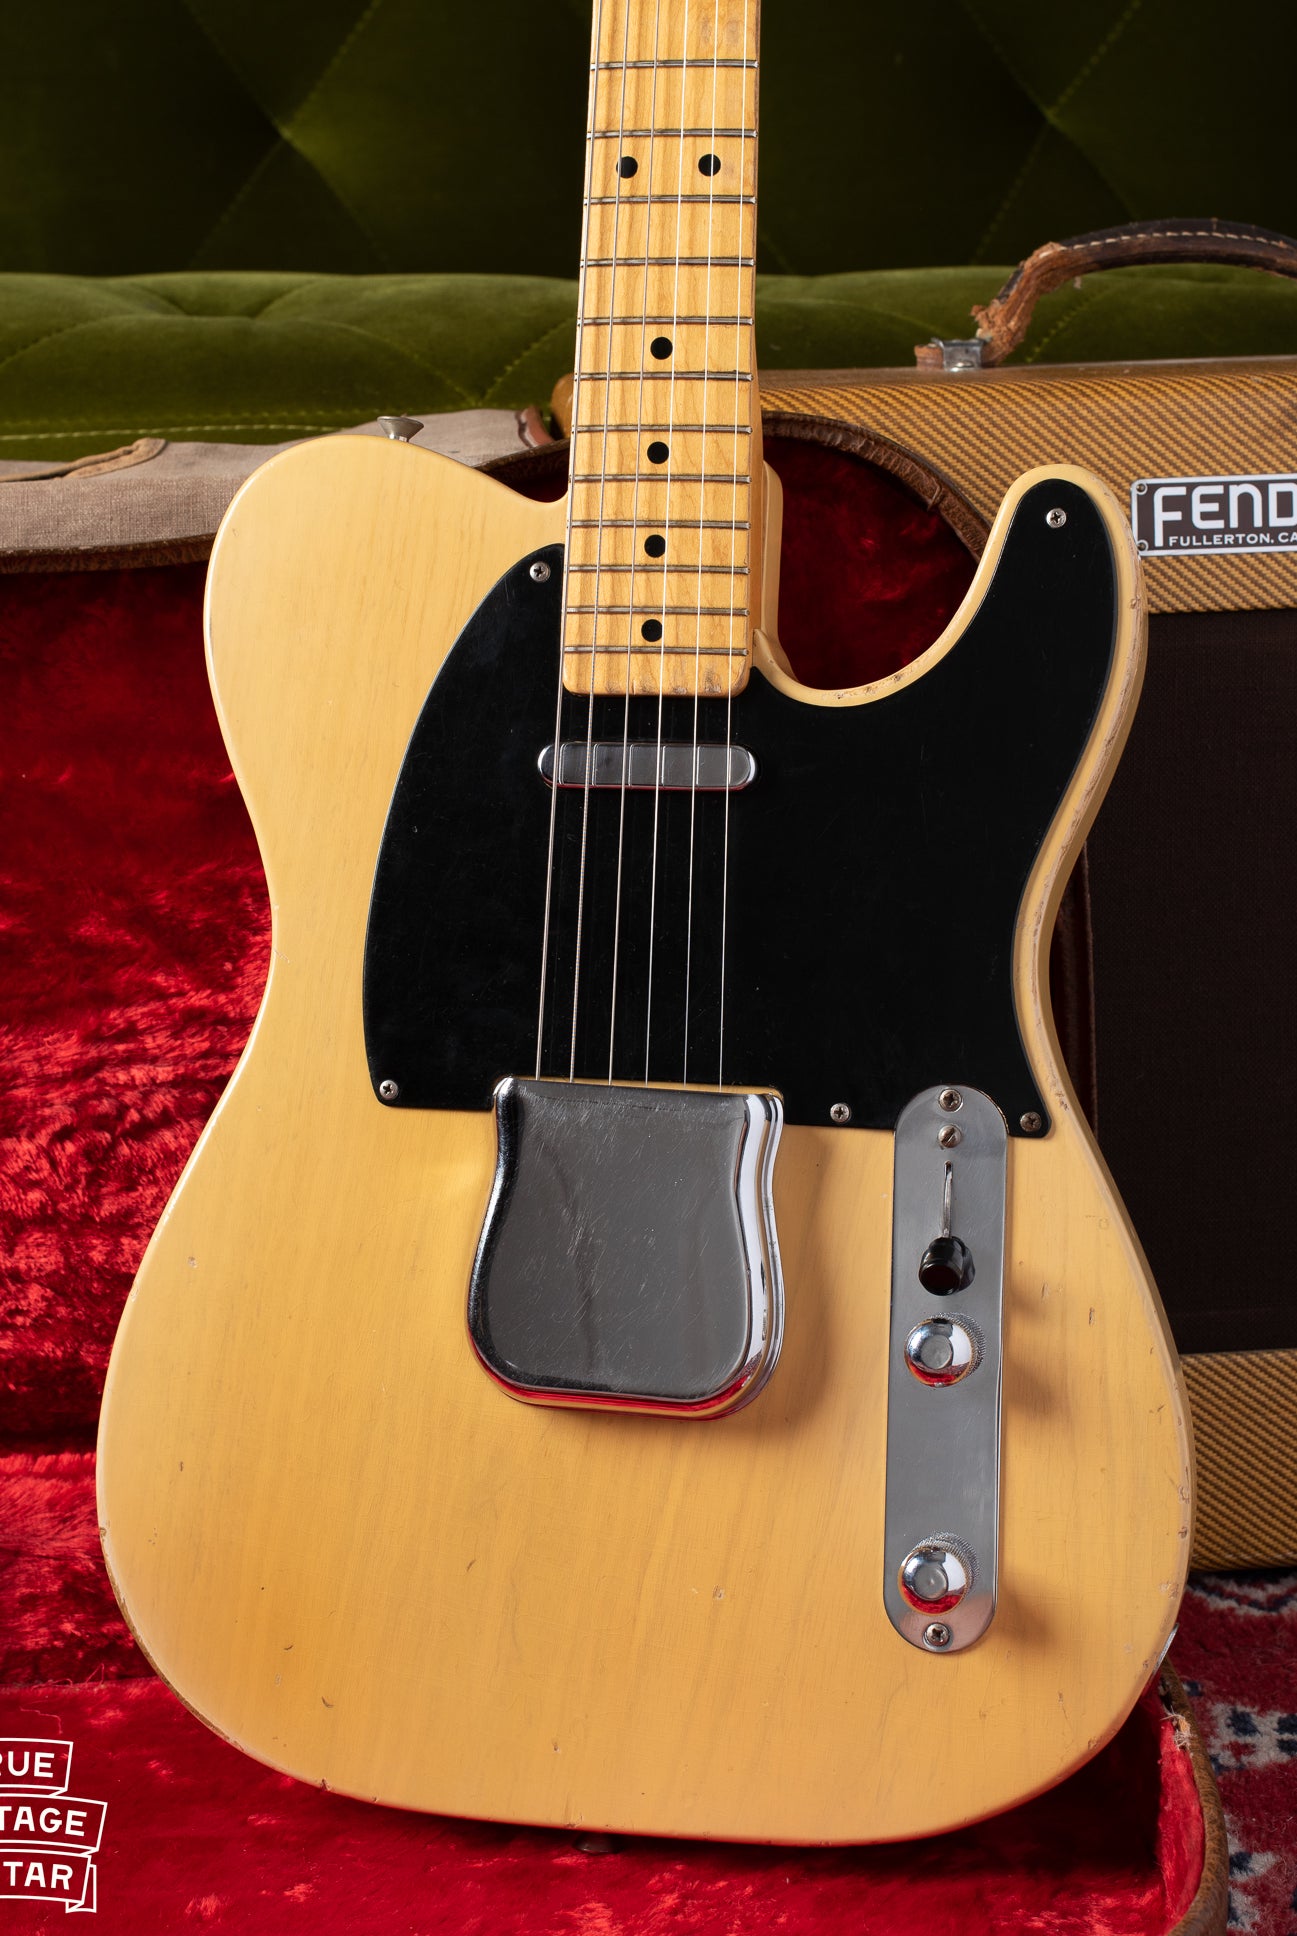 Fender Telecaster 1953 guitar with black pickguard